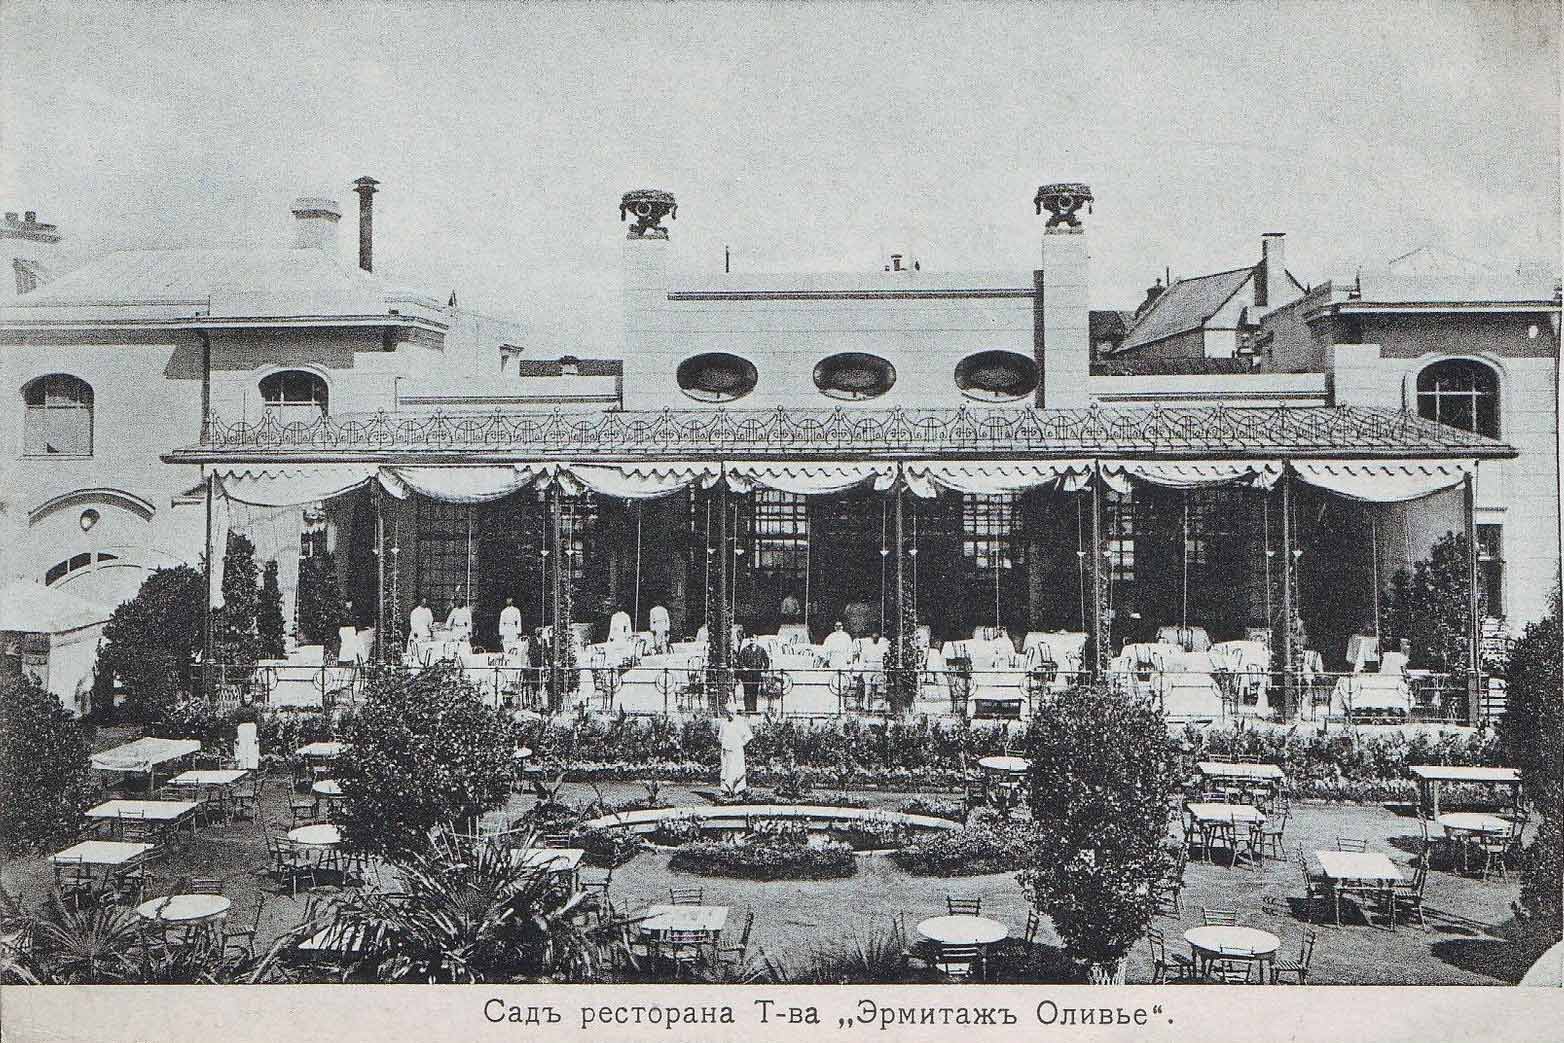 Hermitage Restaurant Garden, c. 1905-1910.